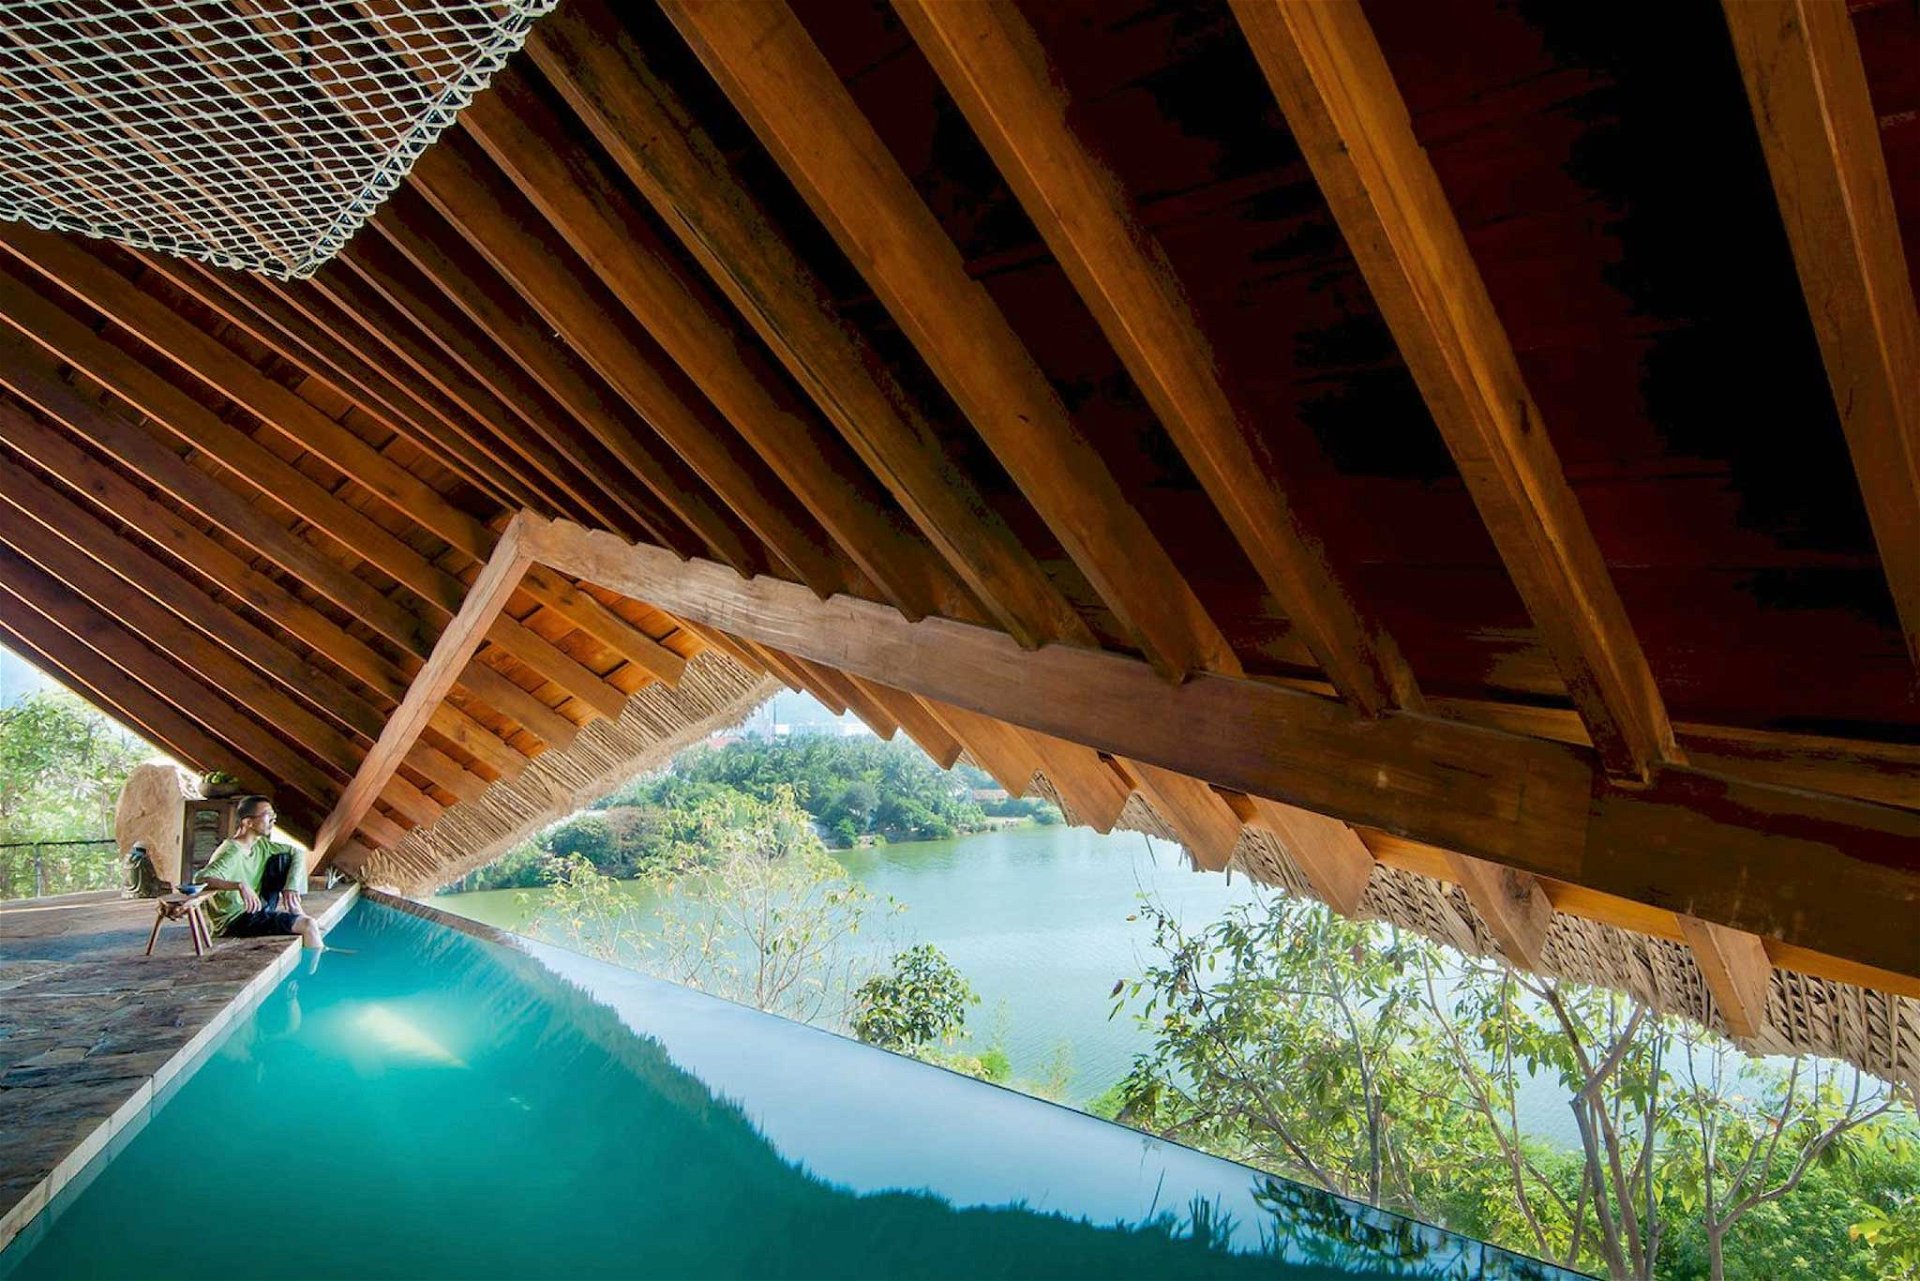 The Tent, Nha Trang, Vietnam: Um ein angenehmes Badeklima zu schaffen, falteten die Architekten ein großes Dach über die Pools, das die luftigen Brisen durchlässt und vor Hitze schützt. a21studio.com